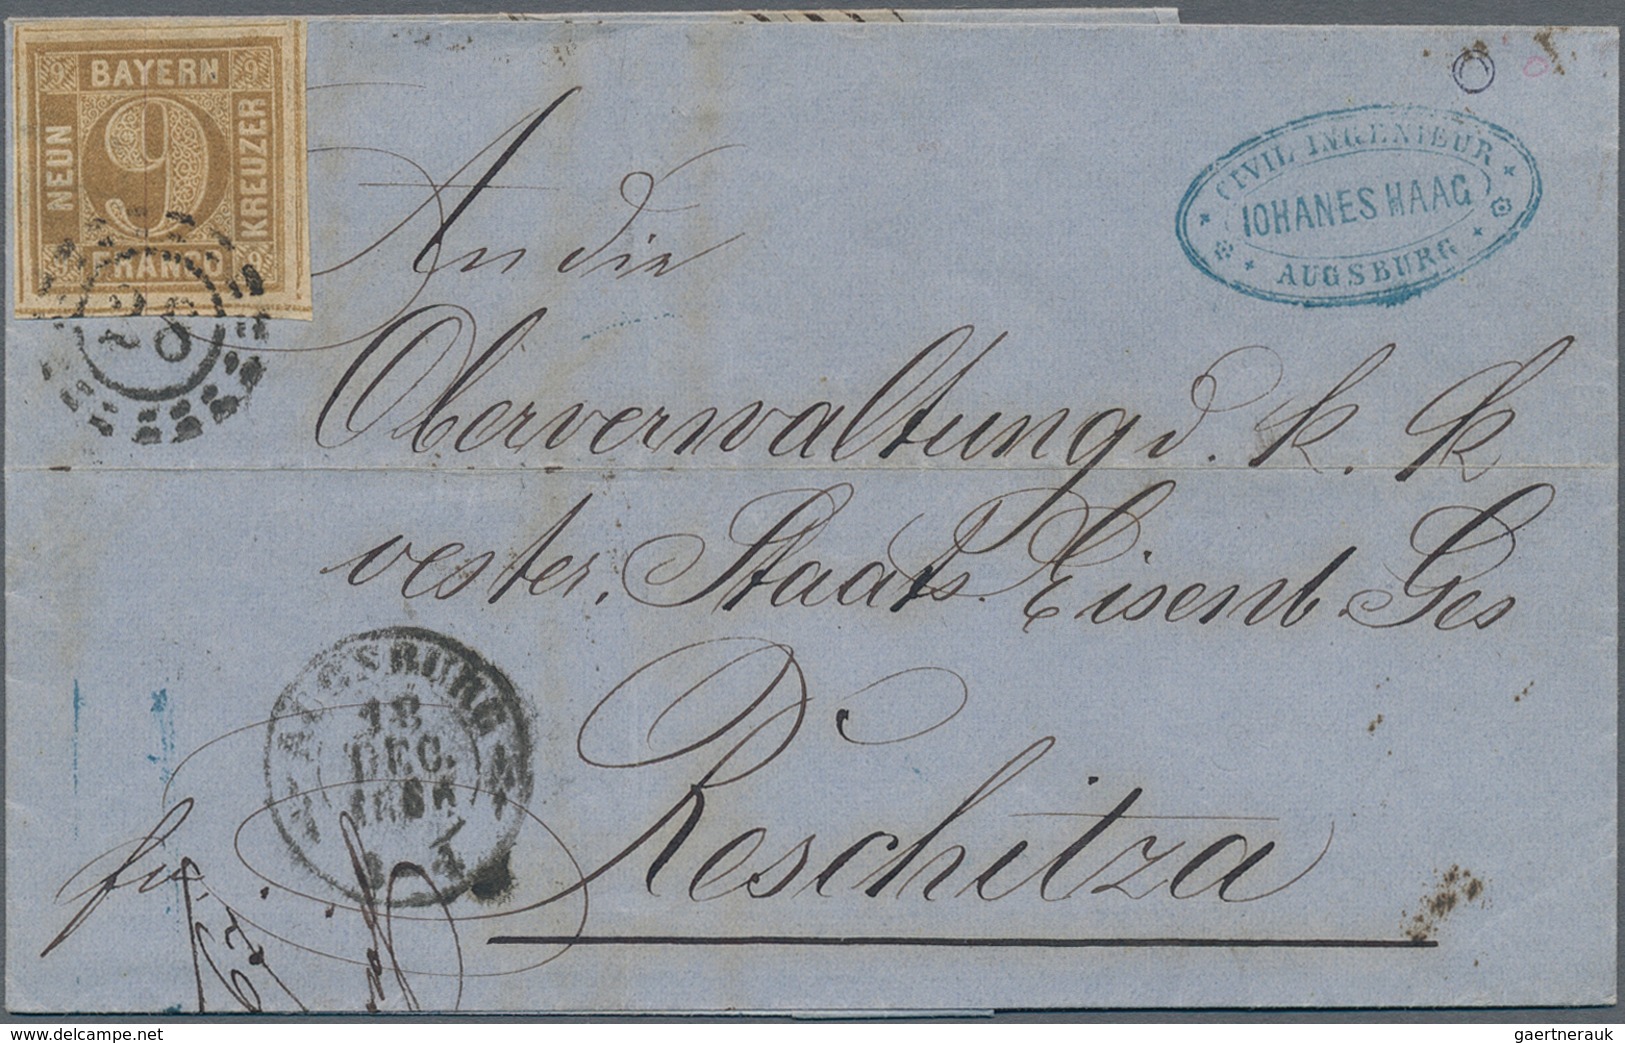 Bayern - Marken und Briefe: 1851/1902, Sammlung von 41 Briefen in guter Vielfalt, dabei 29 Belege mi